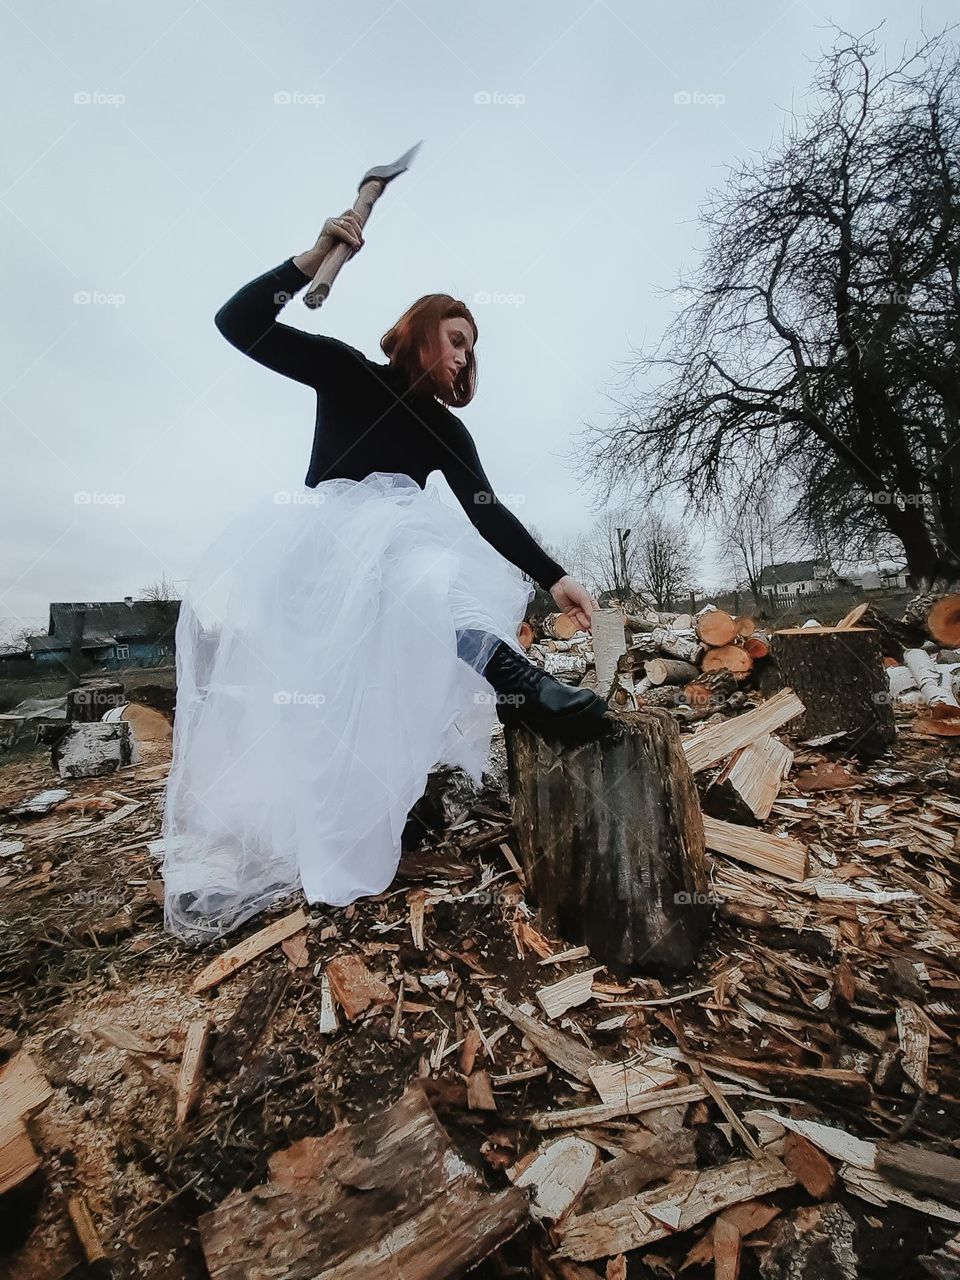 A strong girl chops wood despite her dress